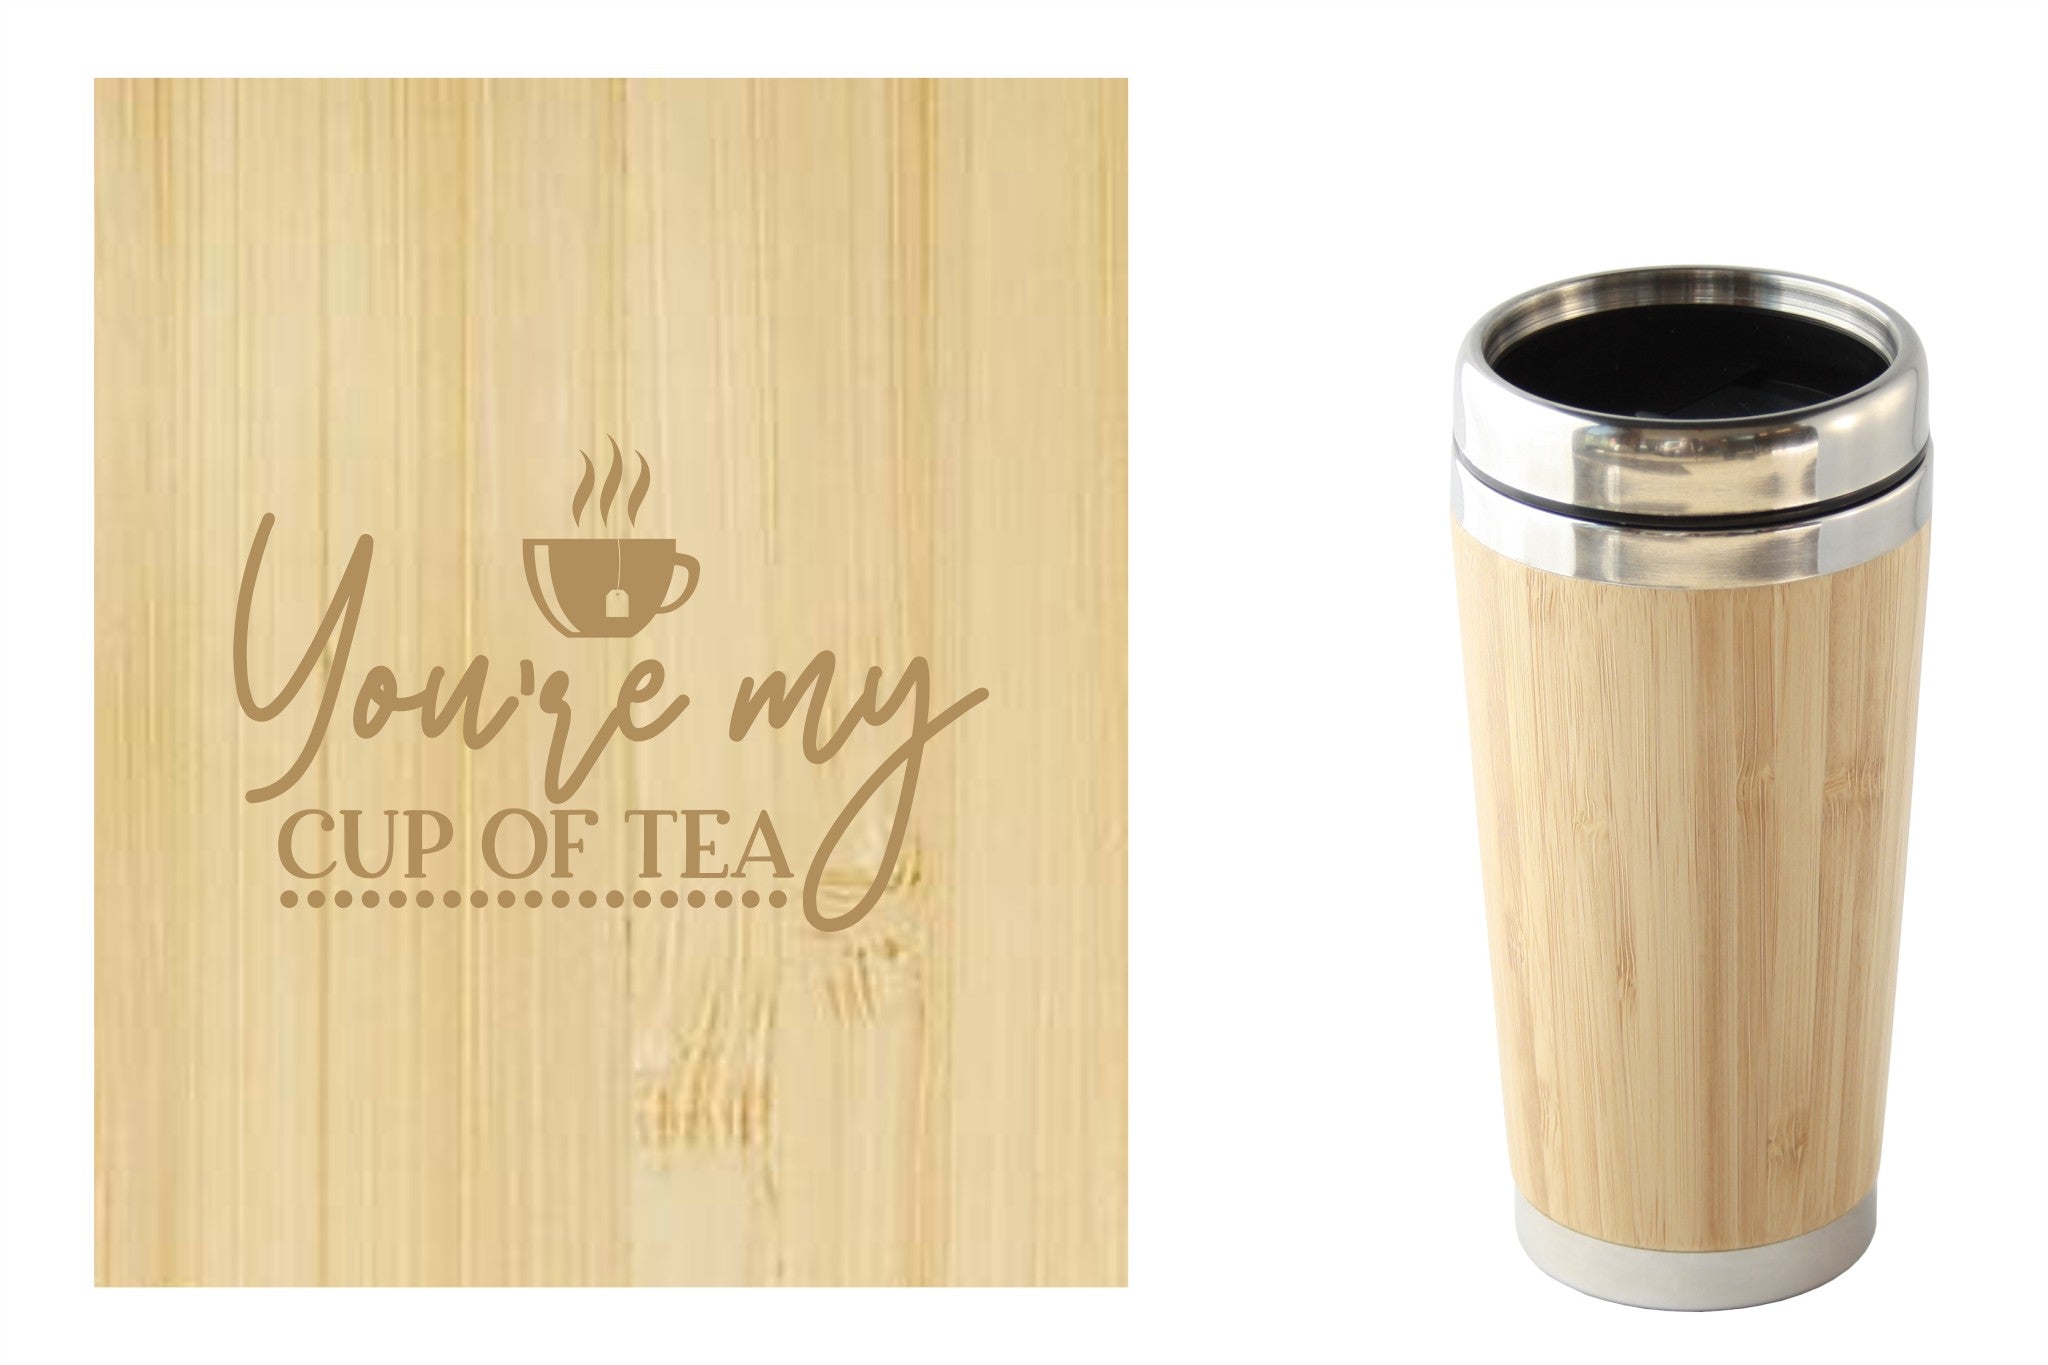 Bamboe reismok met 'You're my cup of tea' tekst, perfect voor onderweg. Duurzaam en milieuvriendelijk.